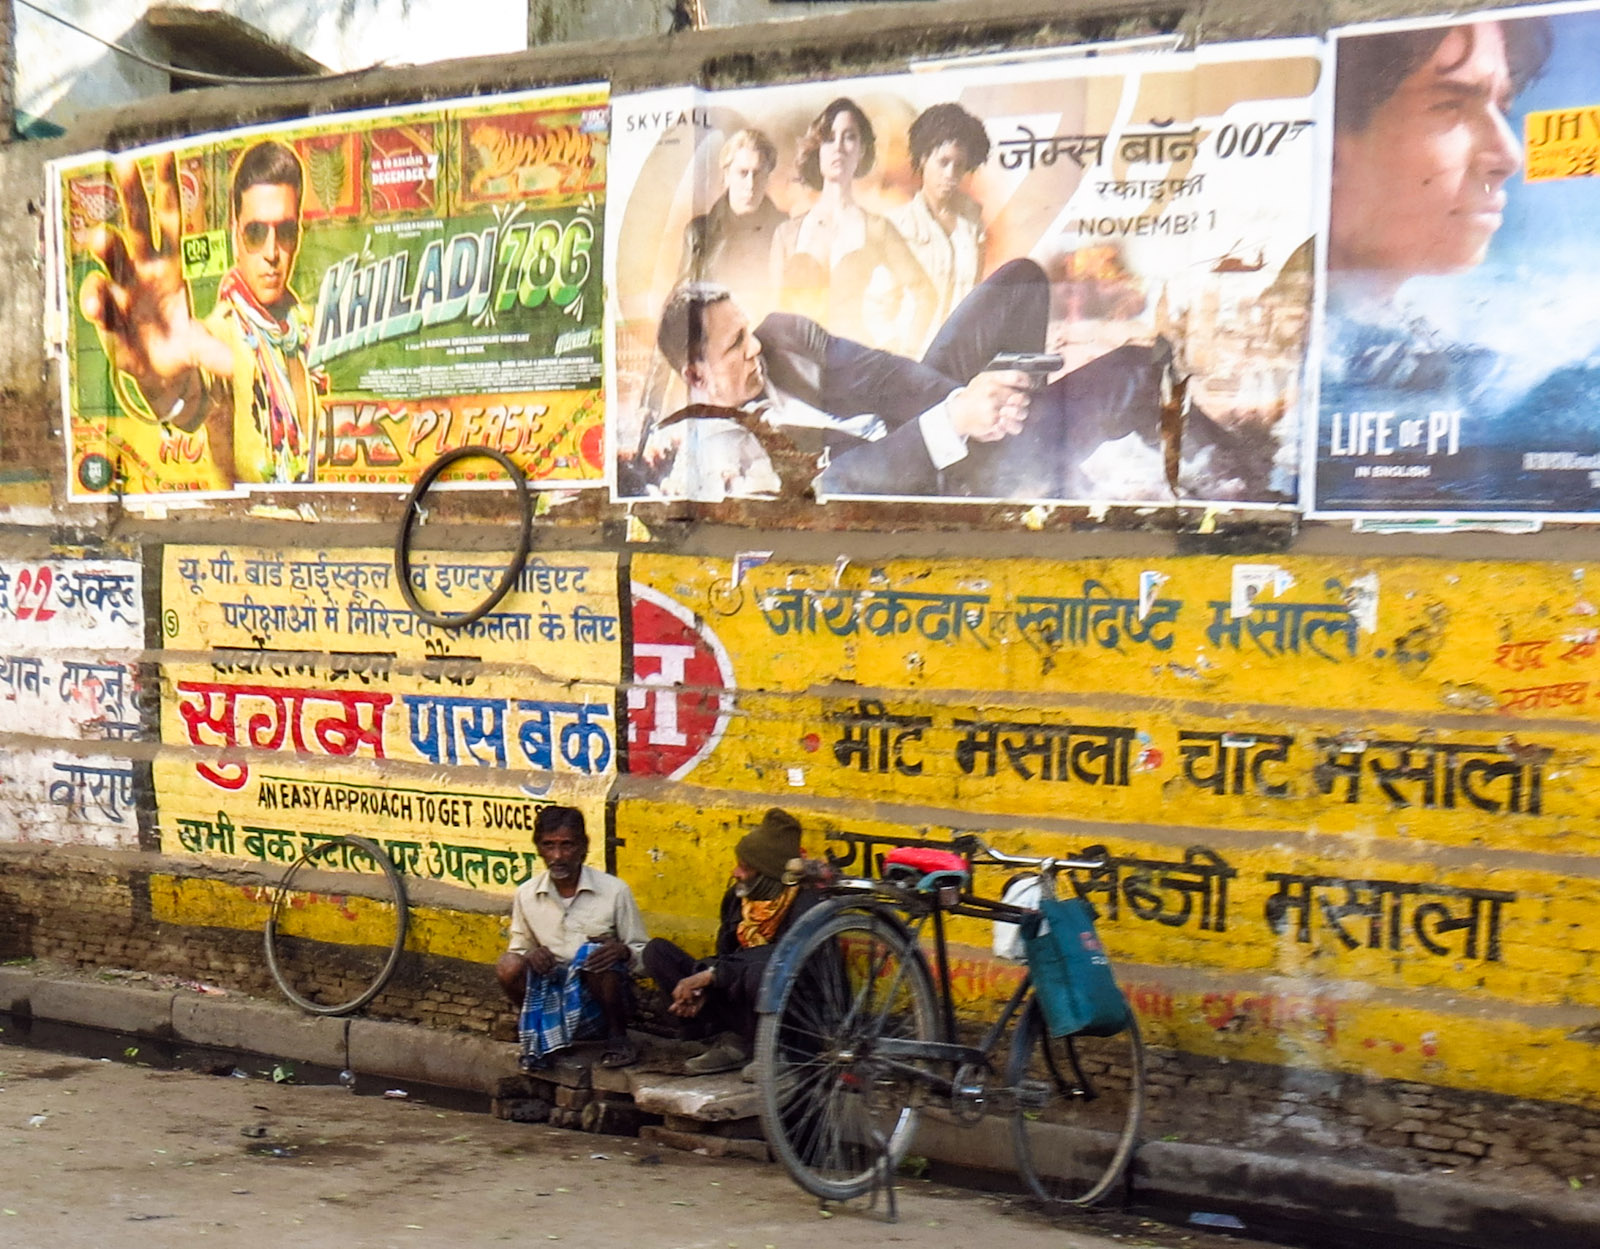 film-adverts-bike-and-men-varanasi-india